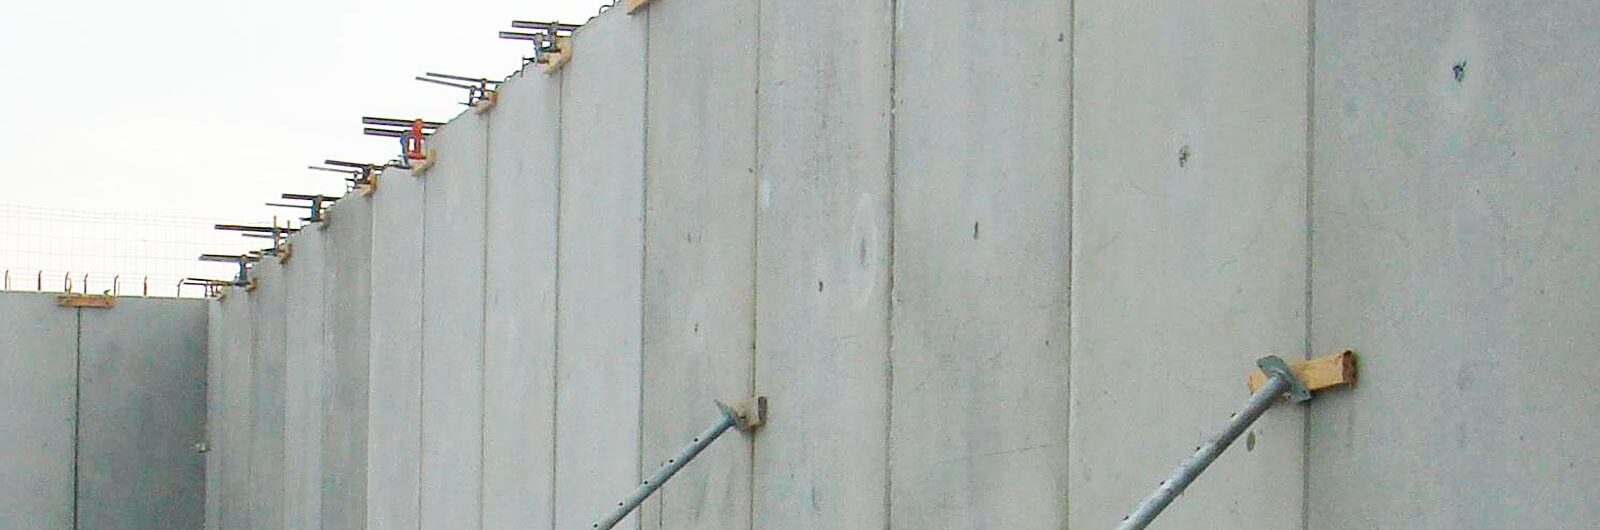 Muro de contención detalle